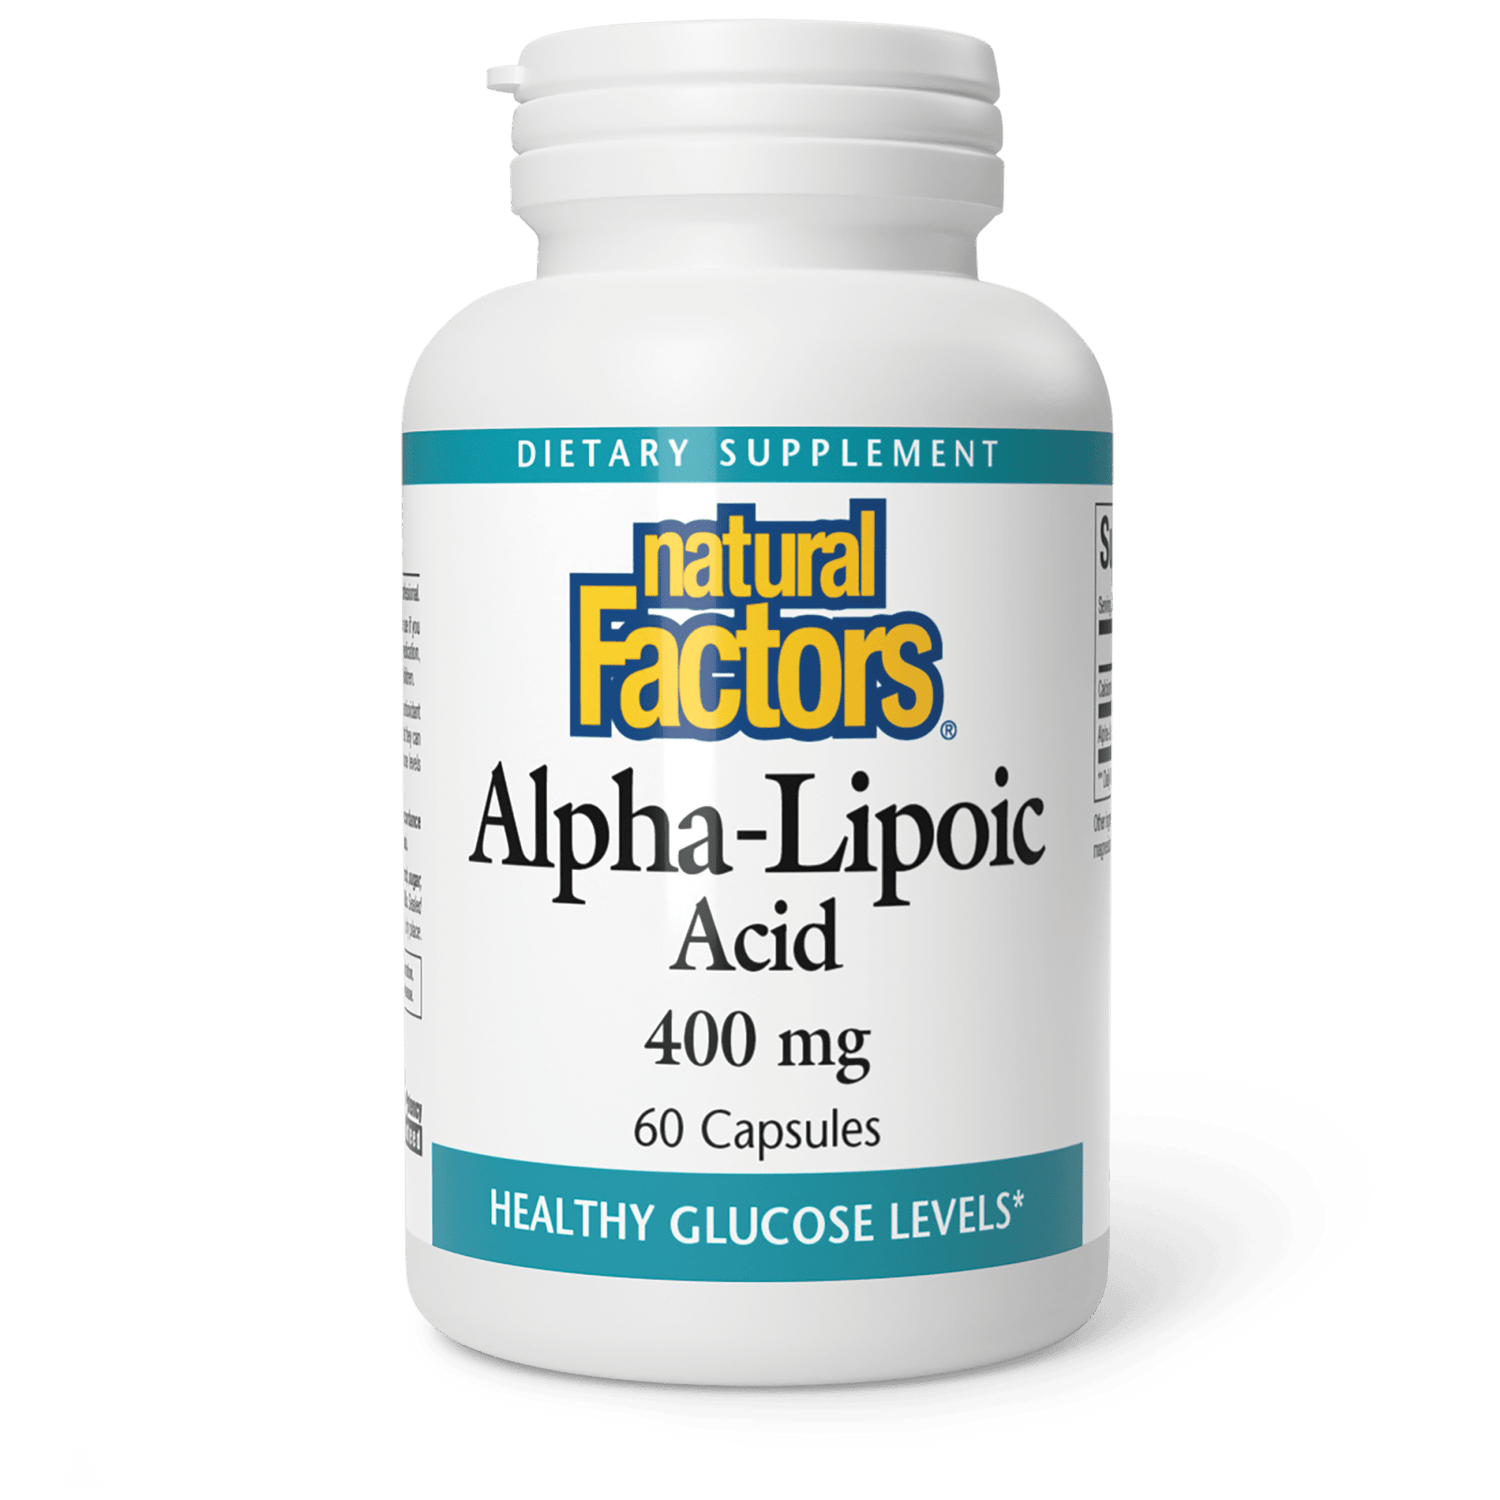 Alpha-Lipoic Acid|variant|hi-res|2101U